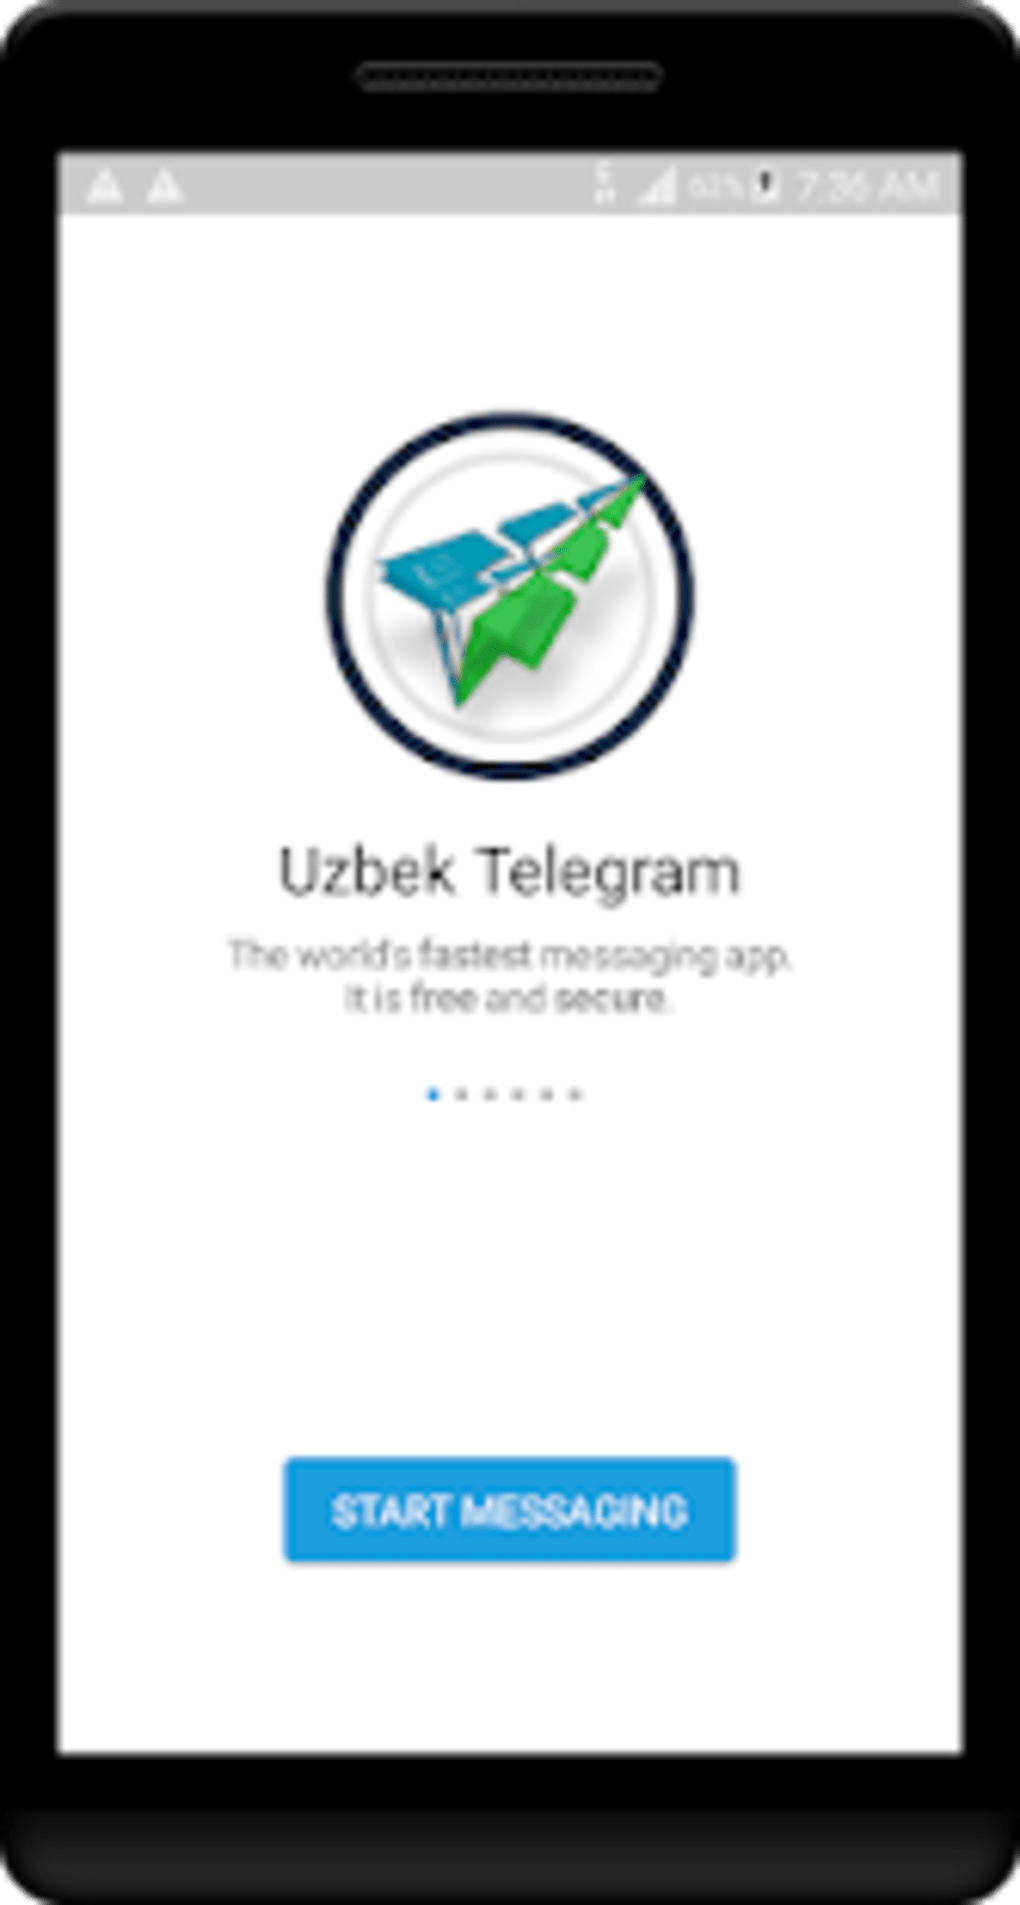 Телеграмм скачать на телефон бесплатно на русском на андроид бесплатно новая версия фото 95